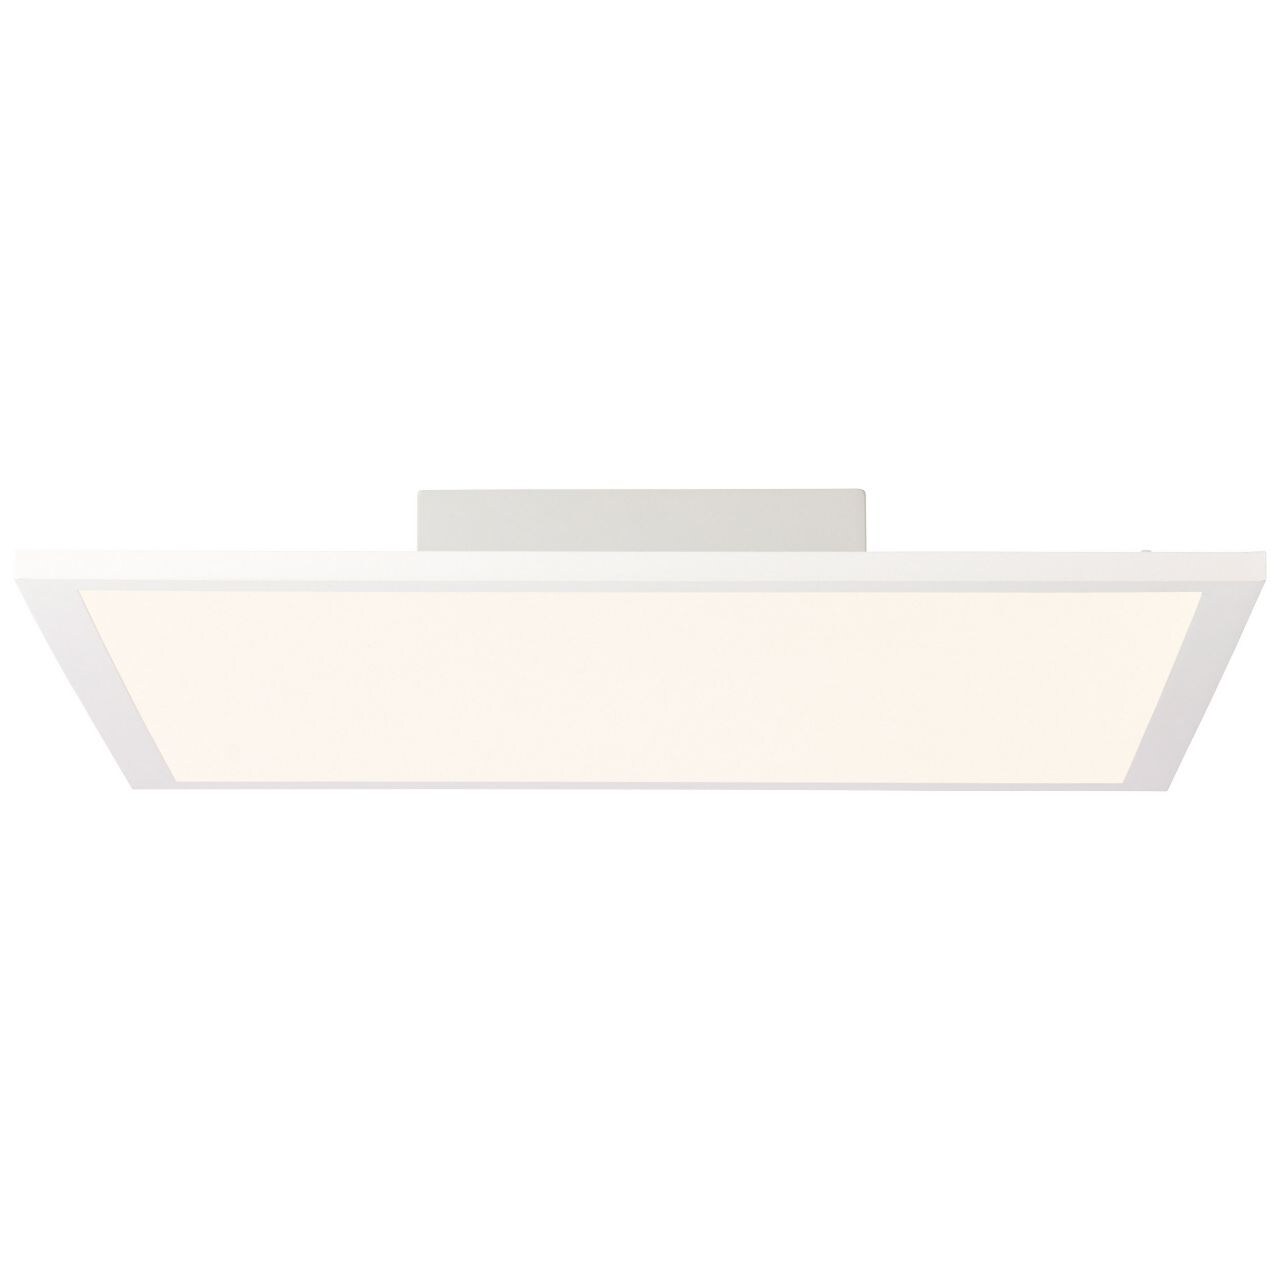 BRILLIANT Lampe Buffi LED Deckenaufbau-Paneel 40x40cm weiß   1x 24W LED integriert, (2400lm, 2700K)   Warmweißes Licht (